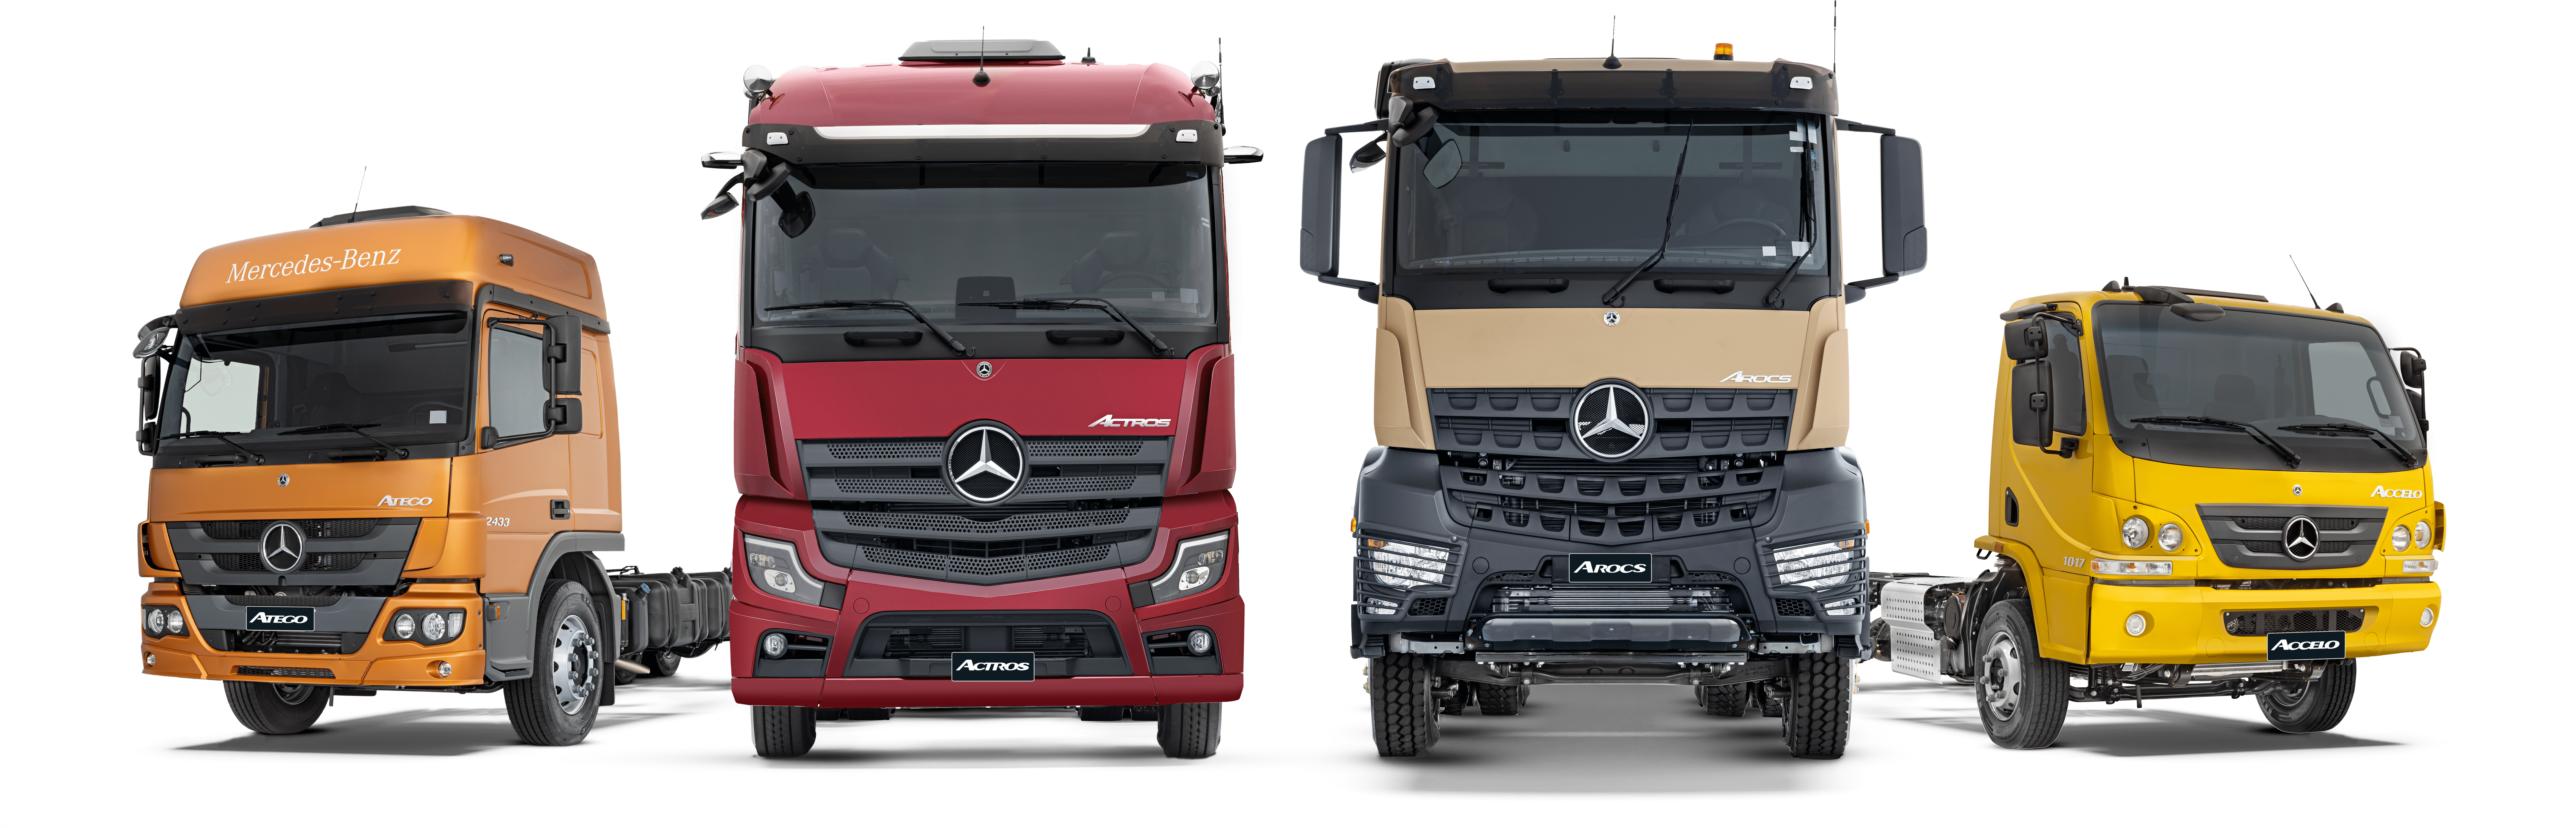 Mercedes-Benz realiza caravana com demonstração e test-drive de caminhões Euro 6